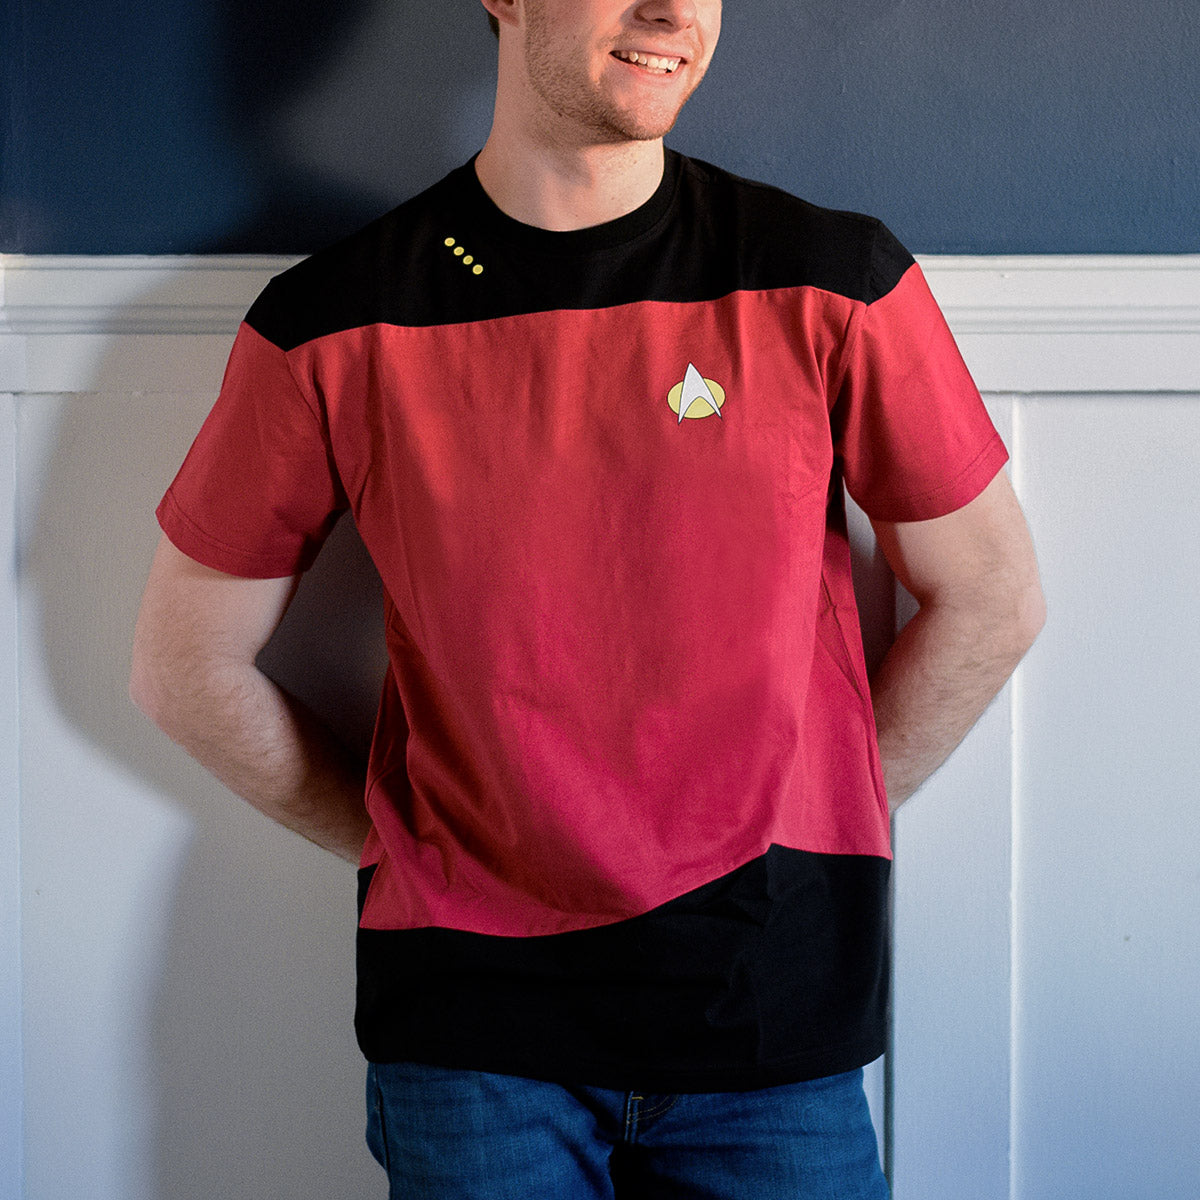 Star Trek: The Next Generation Camiseta de uniforme de mando